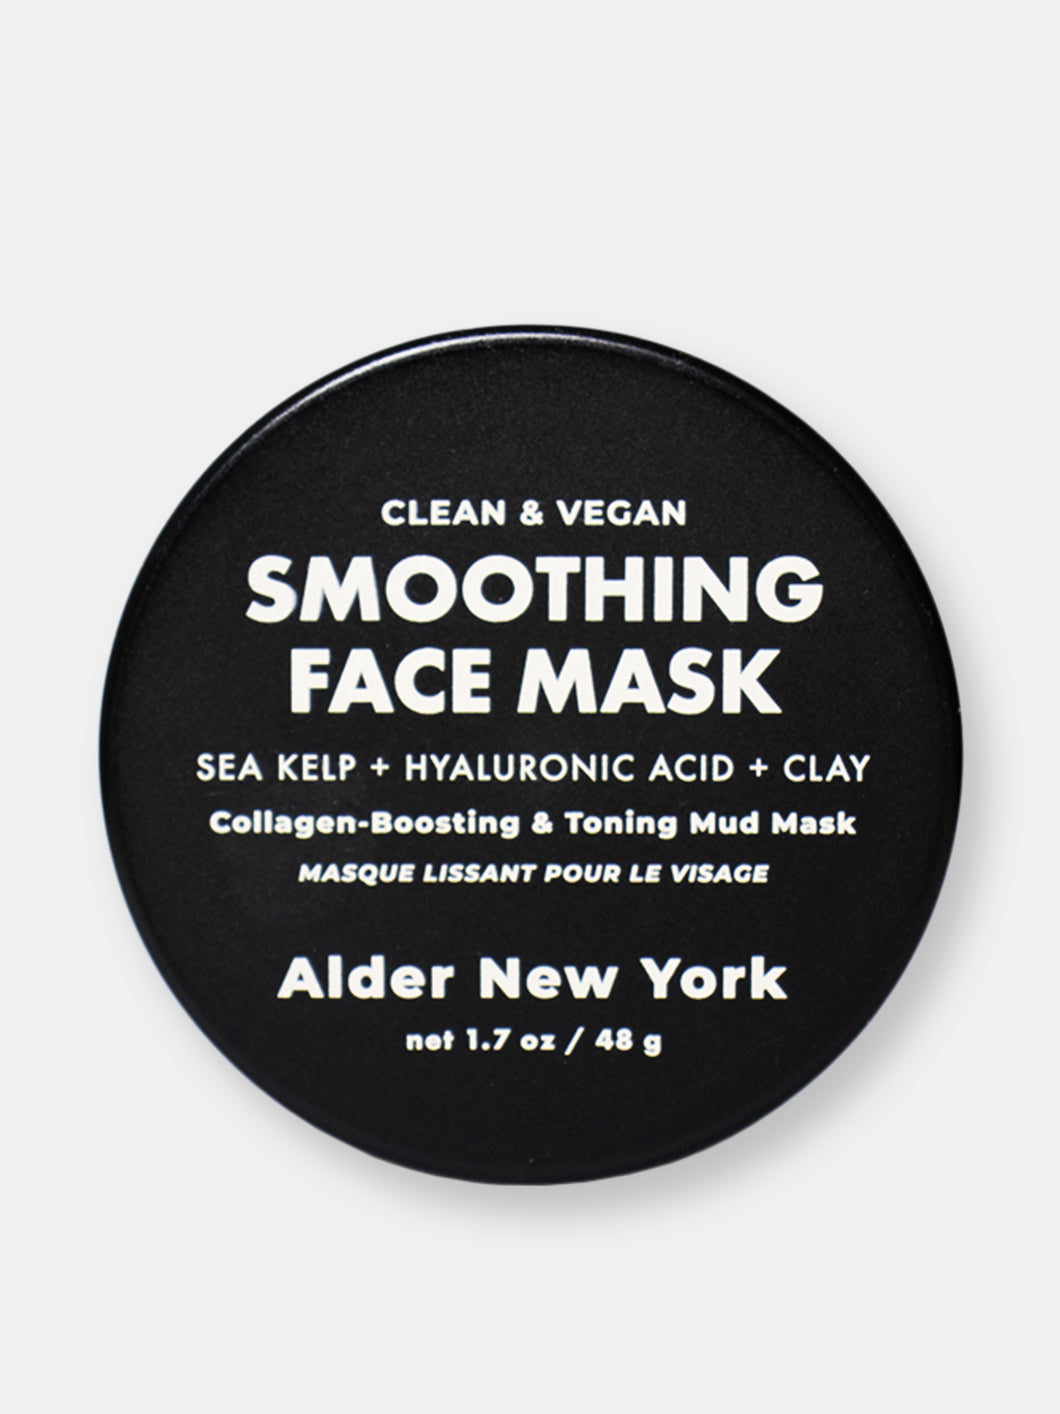 Smoothing Face Mask